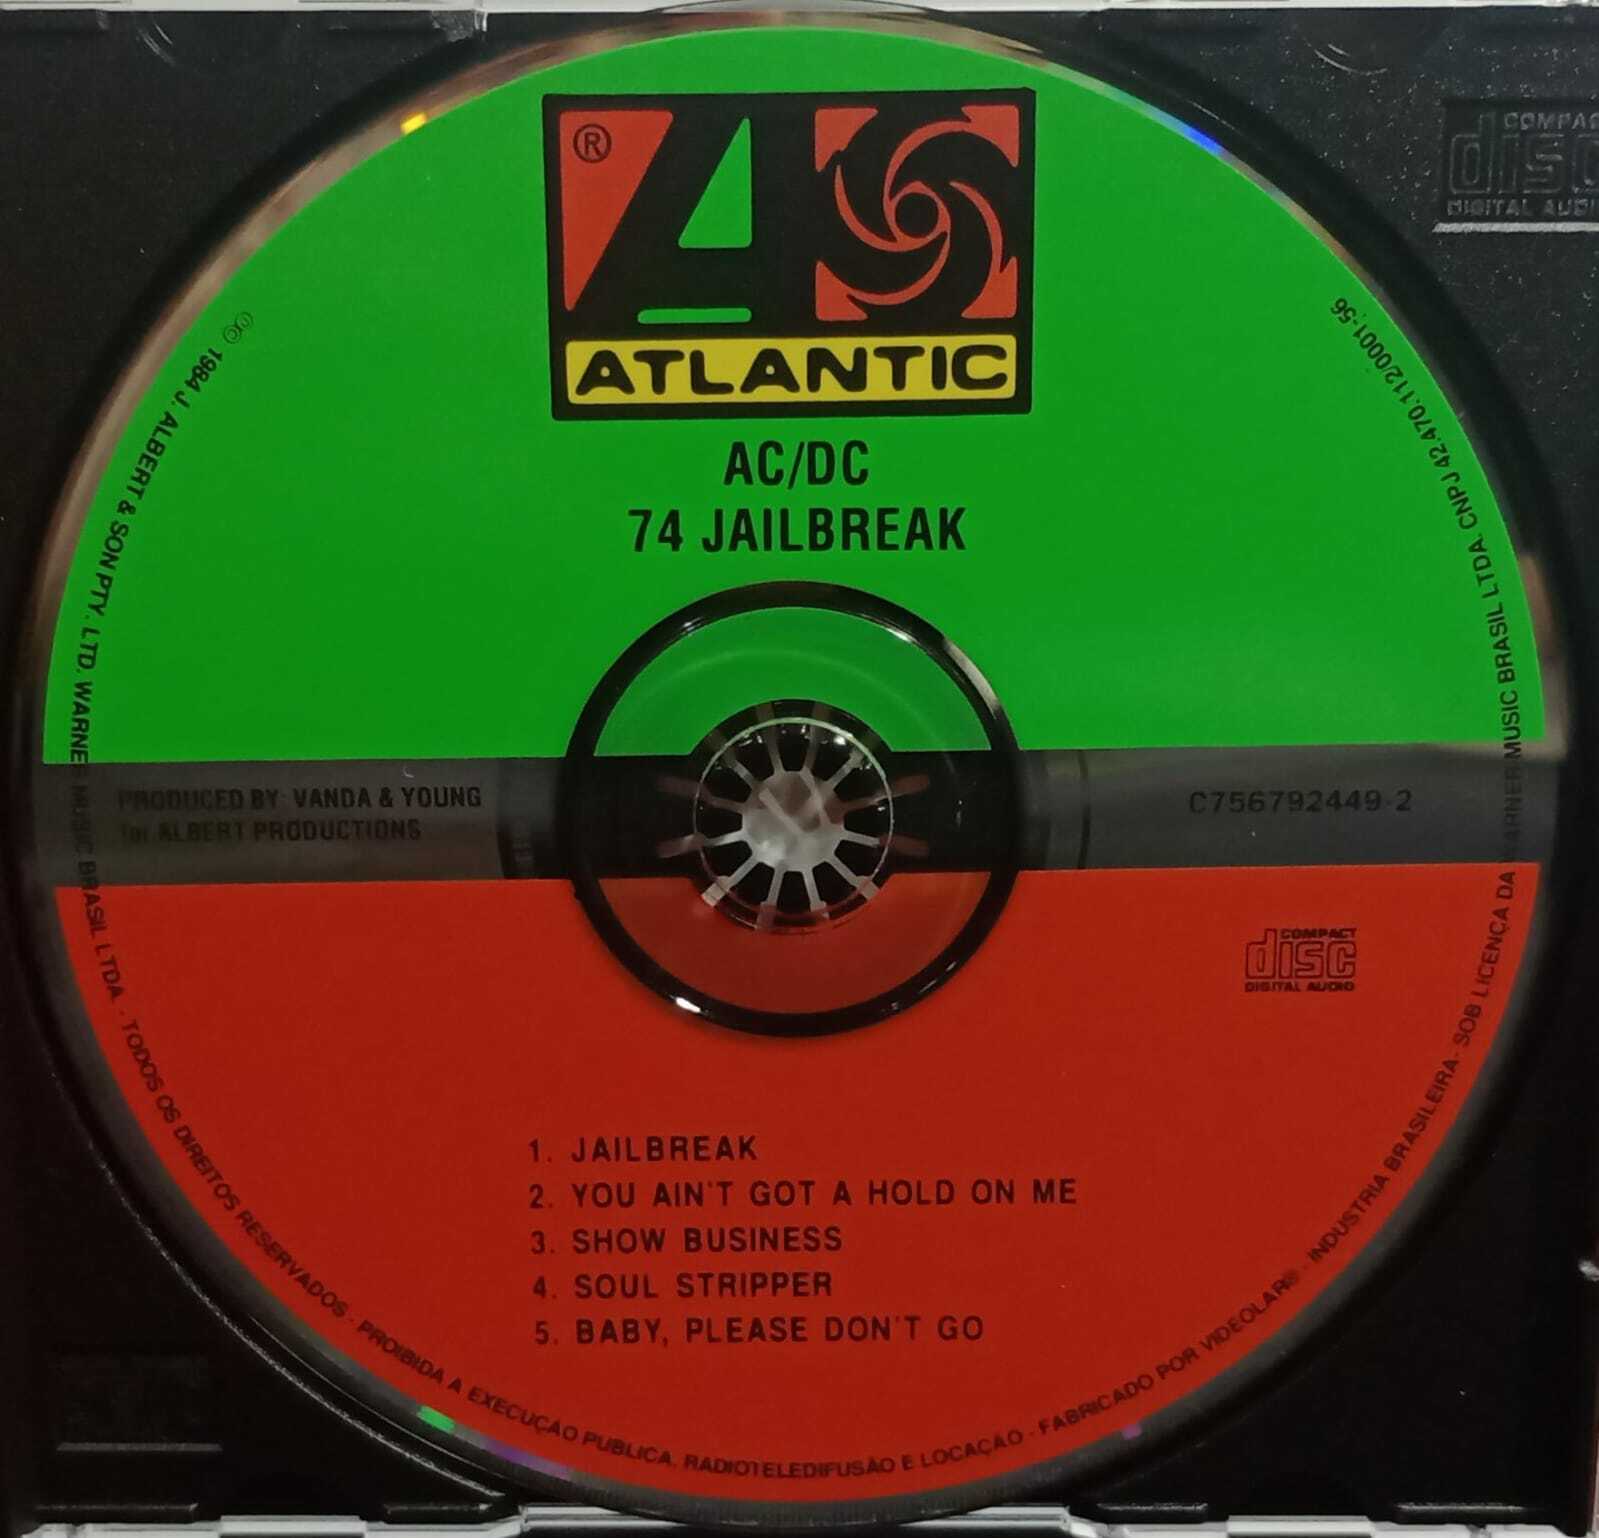 CD - AC/DC - 74 Jailbreak (Acrilico)